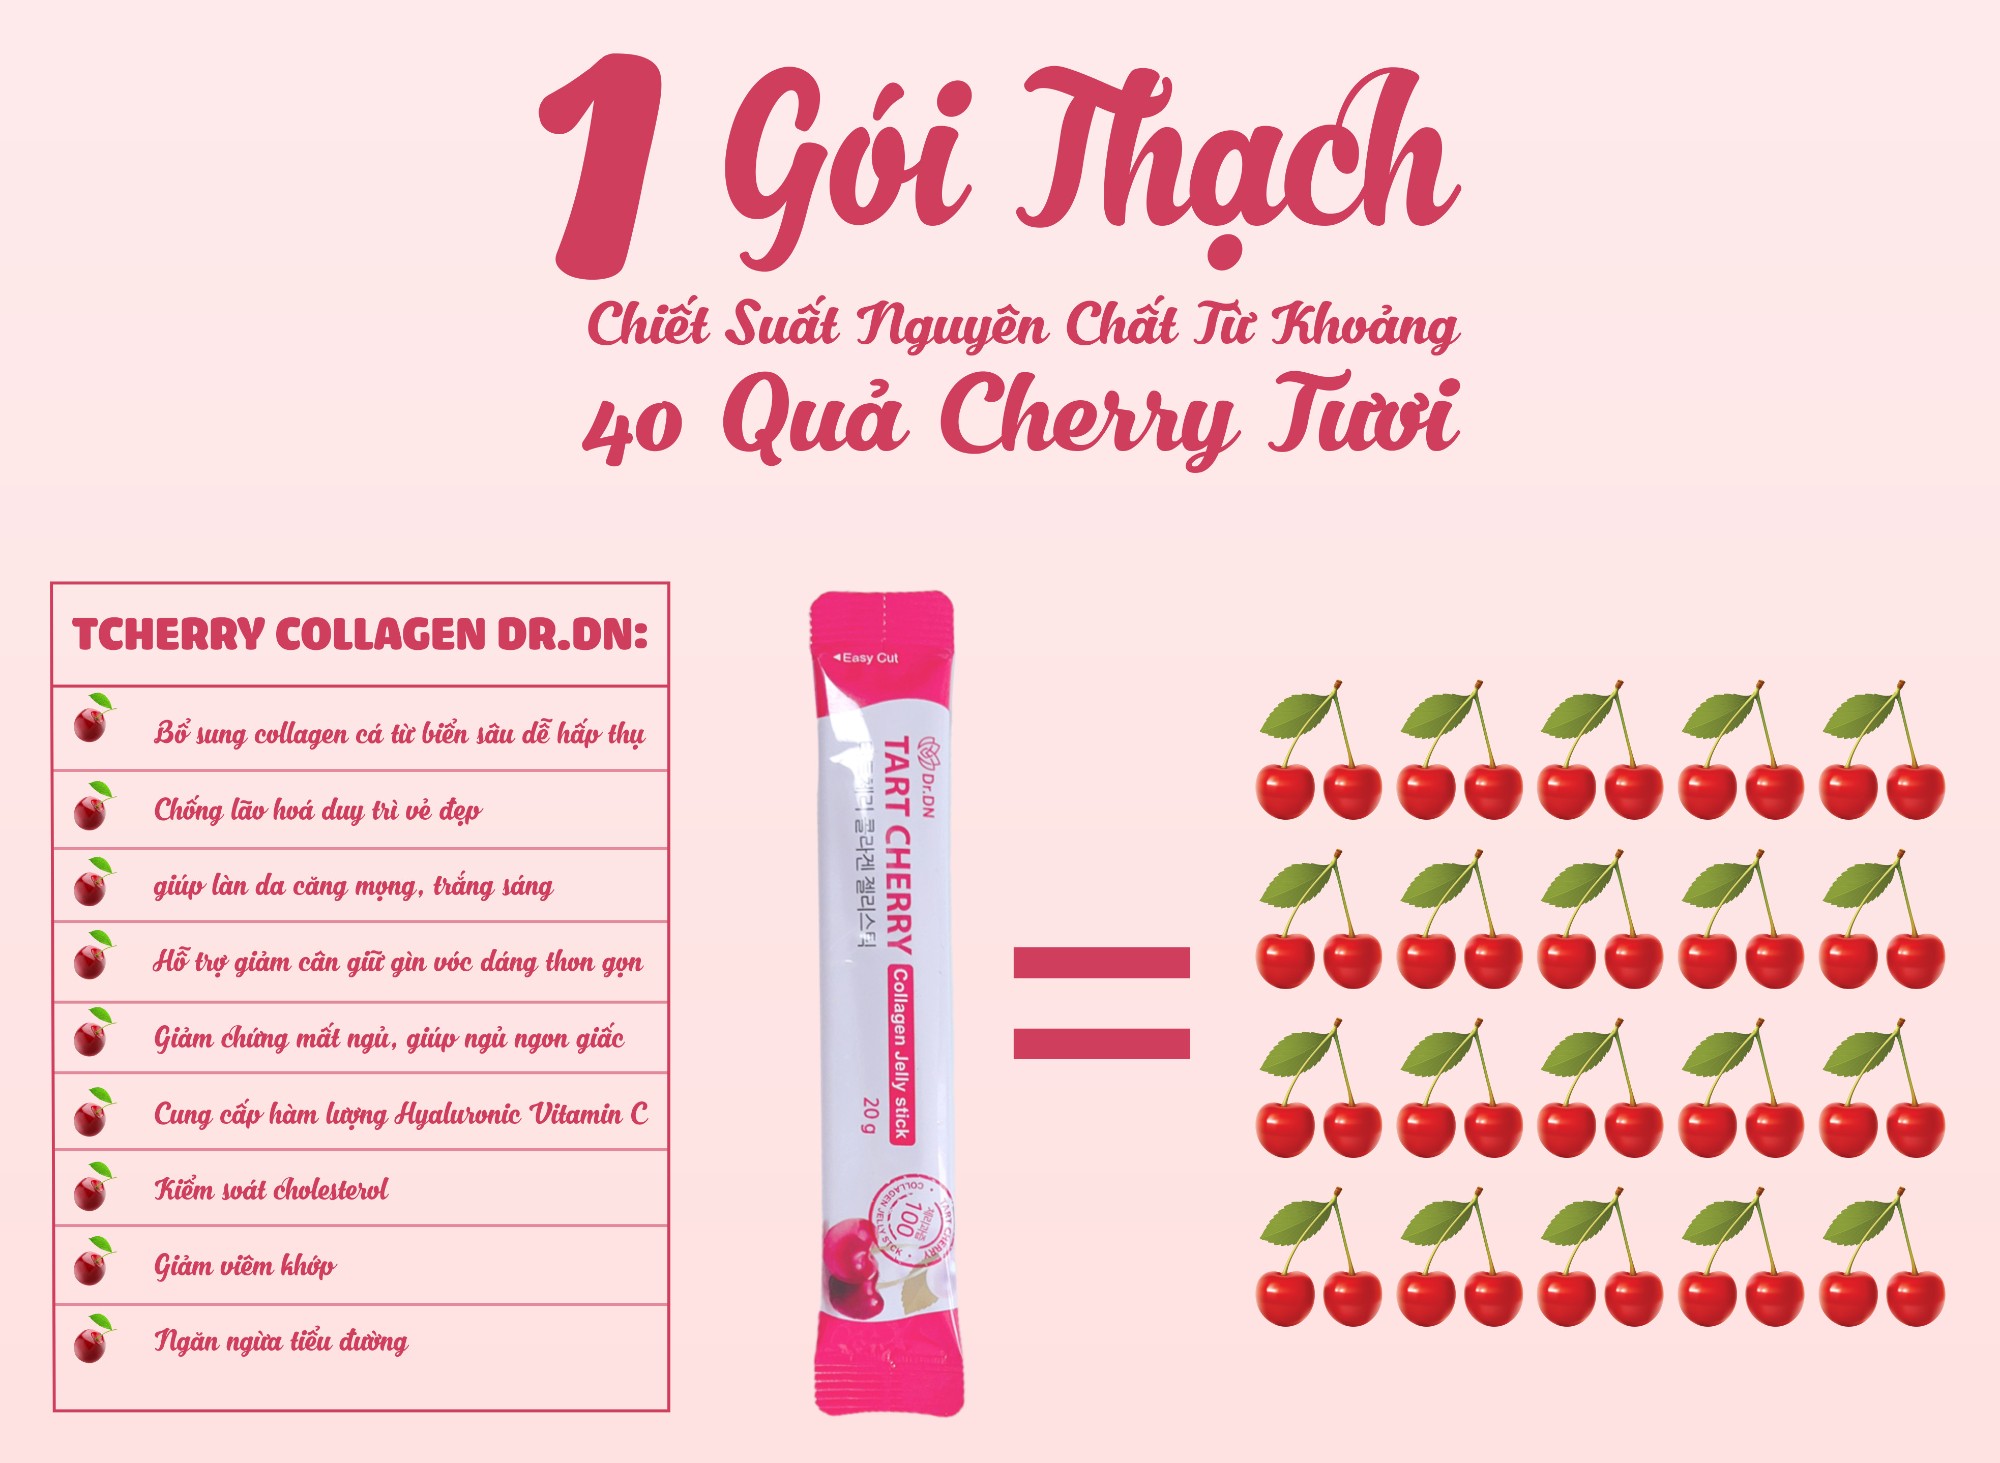 thach-cherry-collagen-drdn5